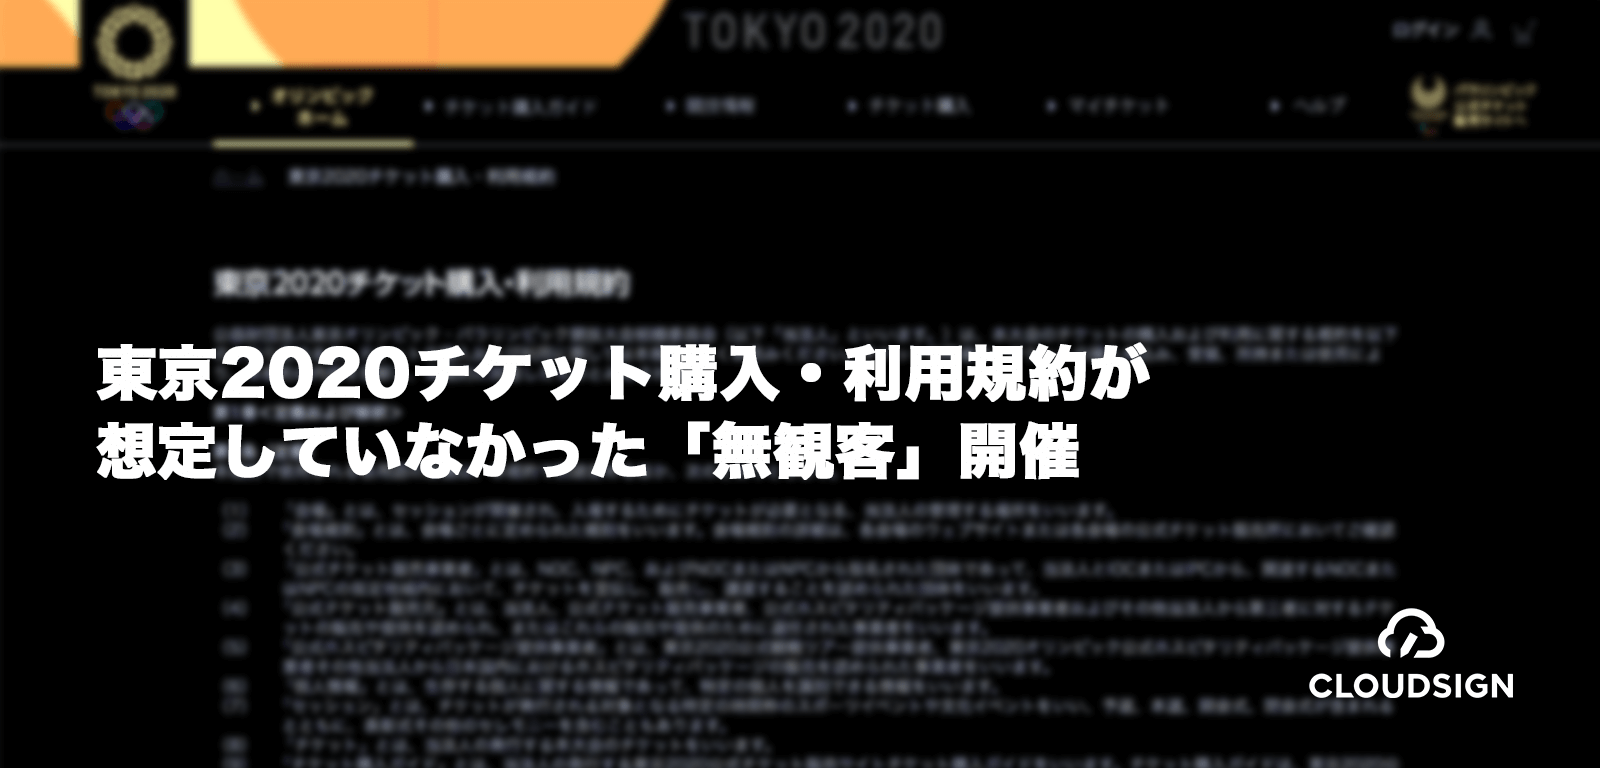 「東京2020チケット購入・利用規約」が想定していなかった「無観客」開催